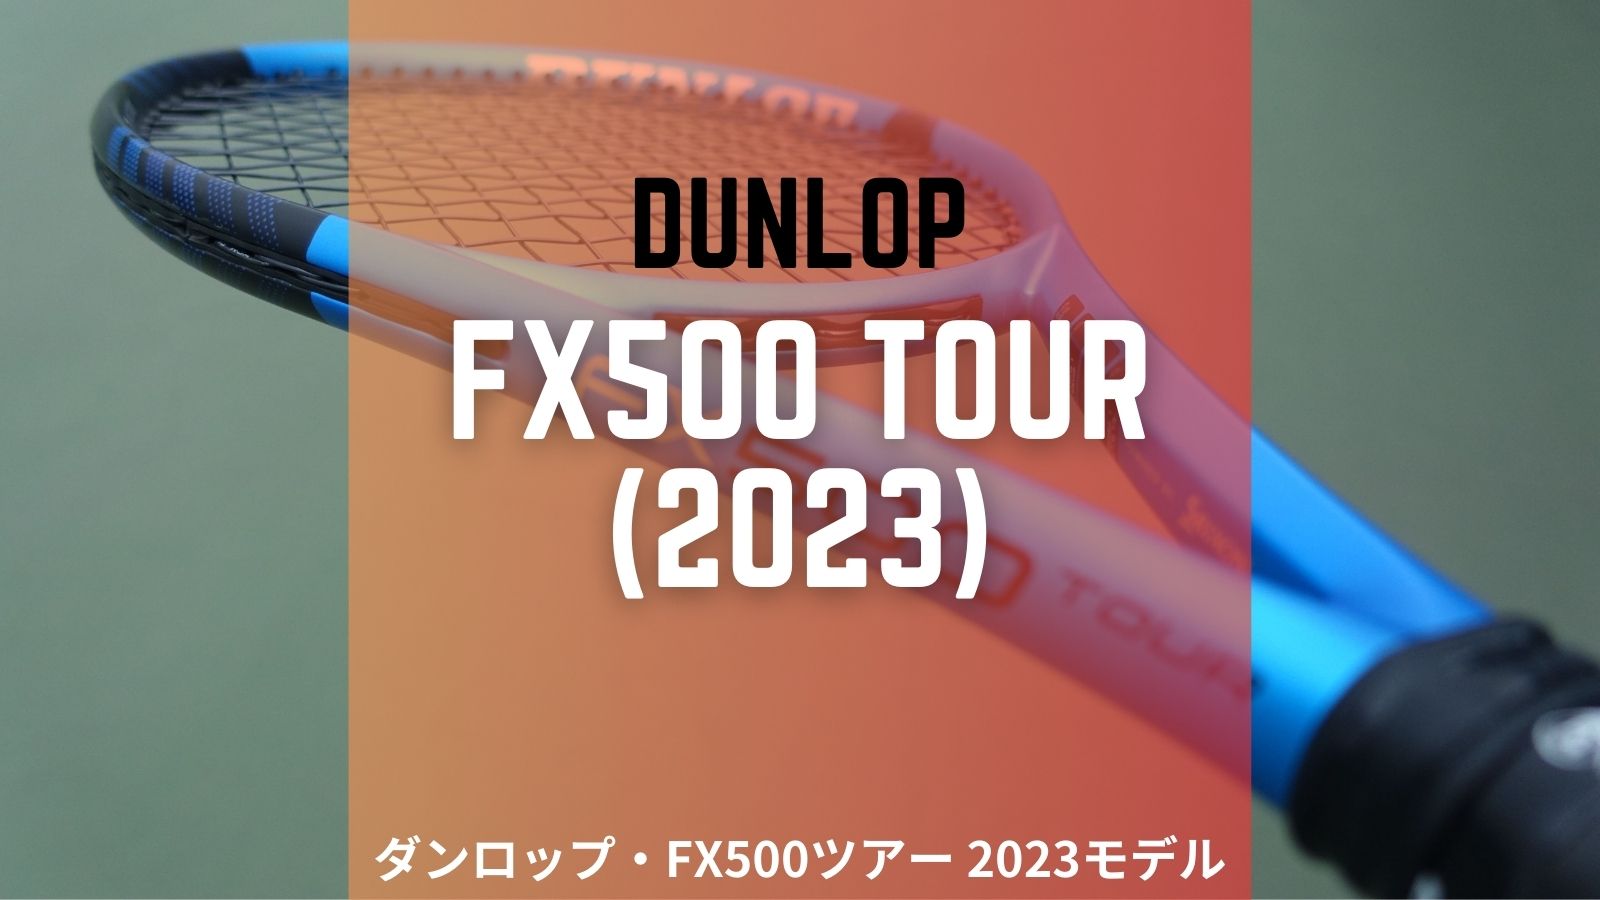 2023年モデル ダンロップFX500ツアー DUNLOP FX500 tour-